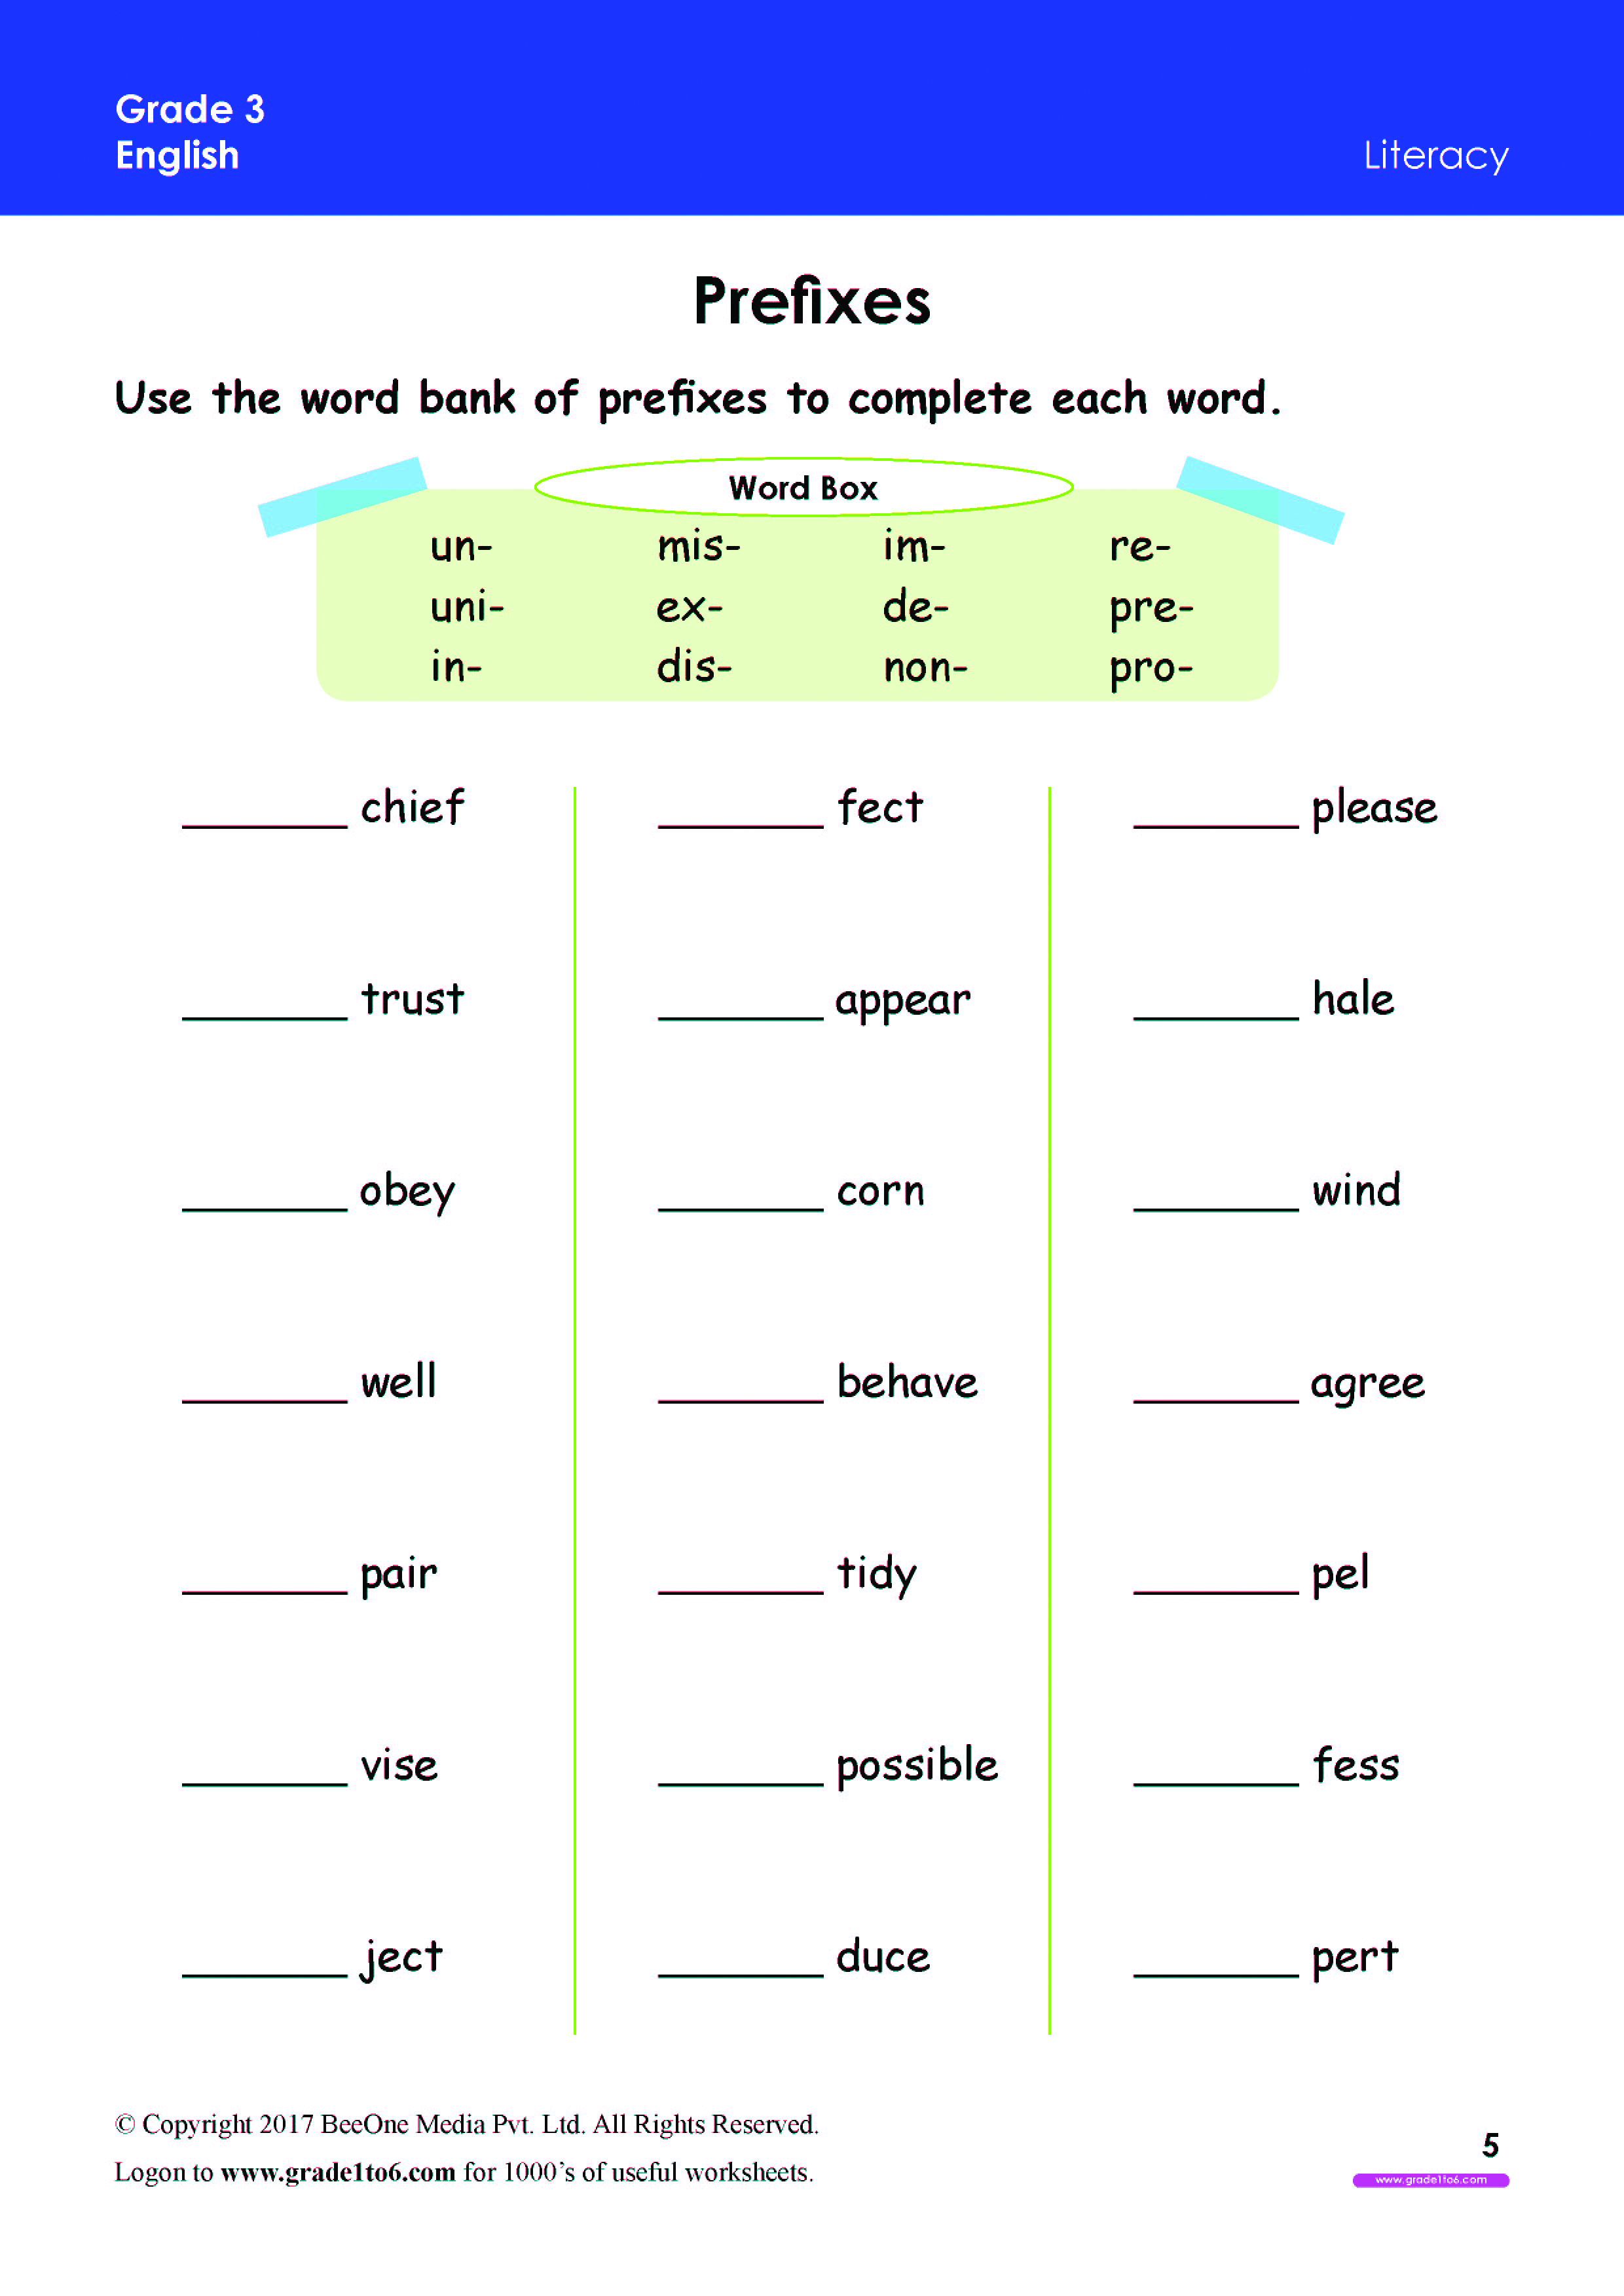 root-words-worksheet-pdf